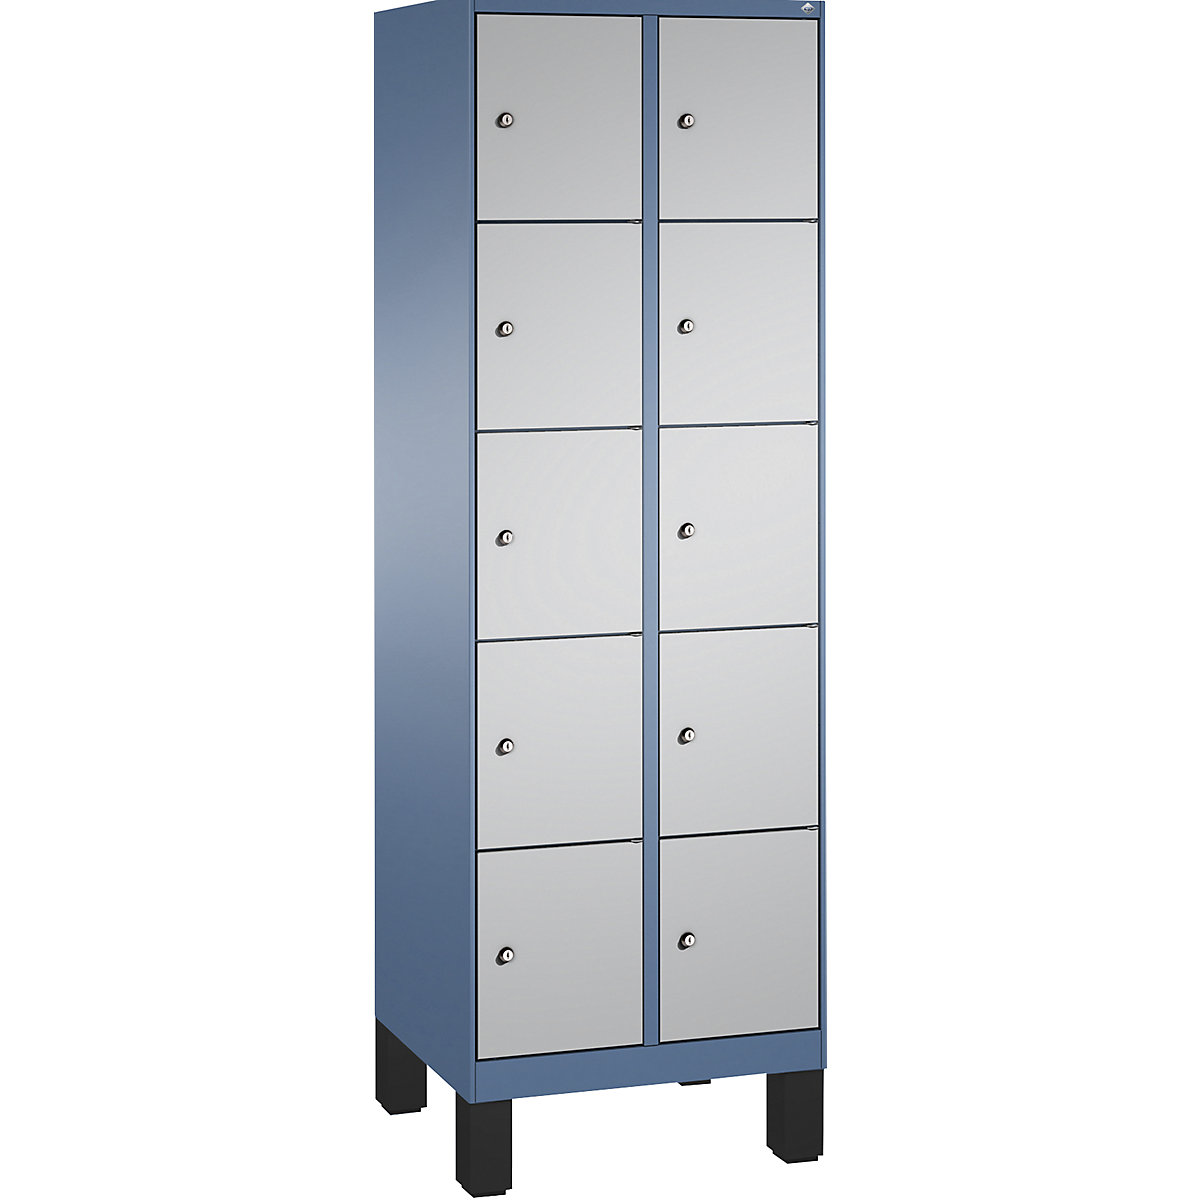 Armoire à casiers sur pieds EVOLO – C+P, 2 compartiments, 5 casiers chacun, largeur compartiments 300 mm, bleu distant / aluminium-5